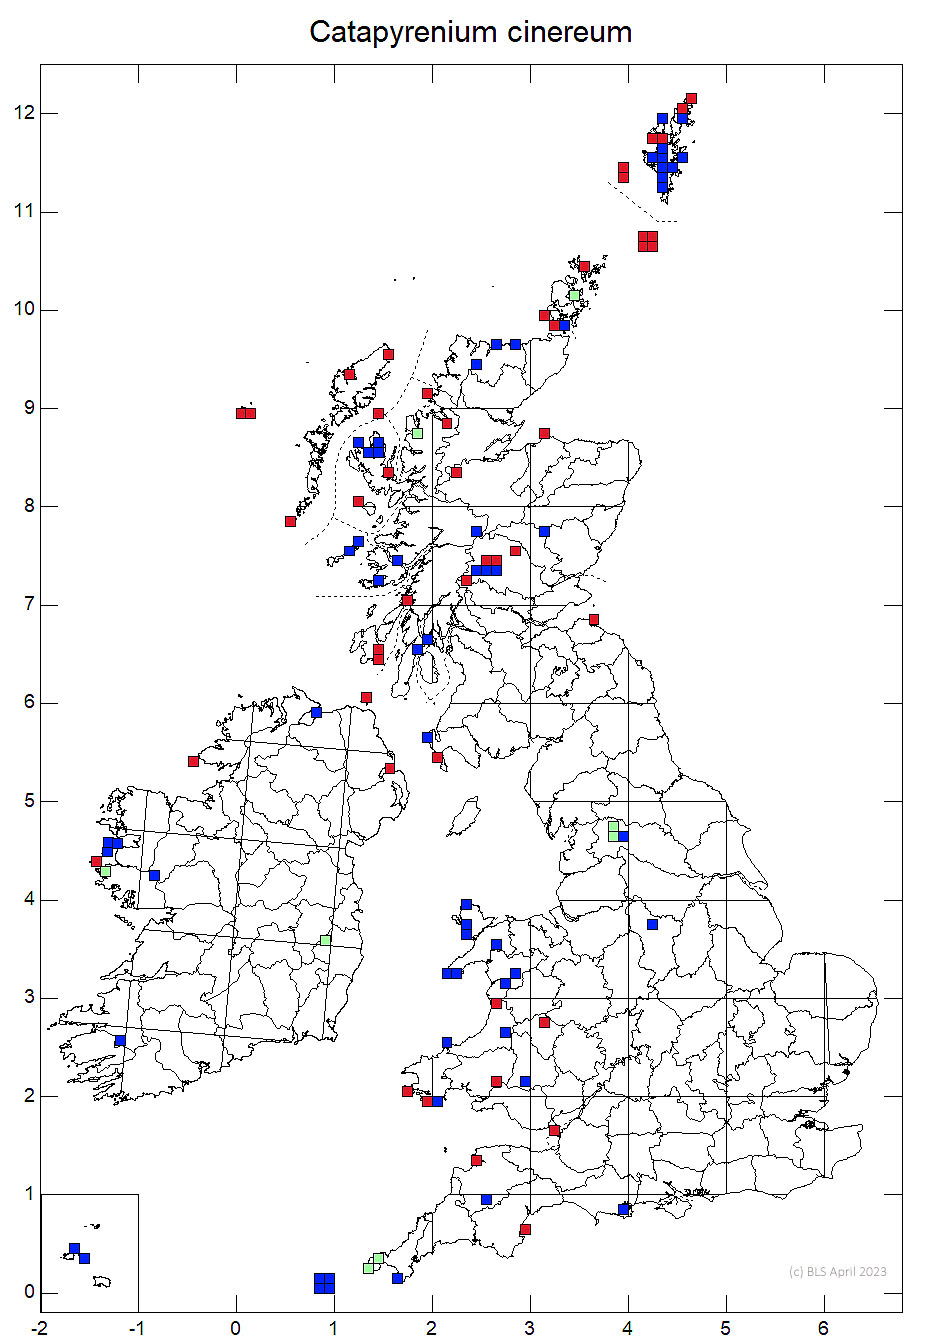 Catapyrenium cinereum 10km sq distribution map